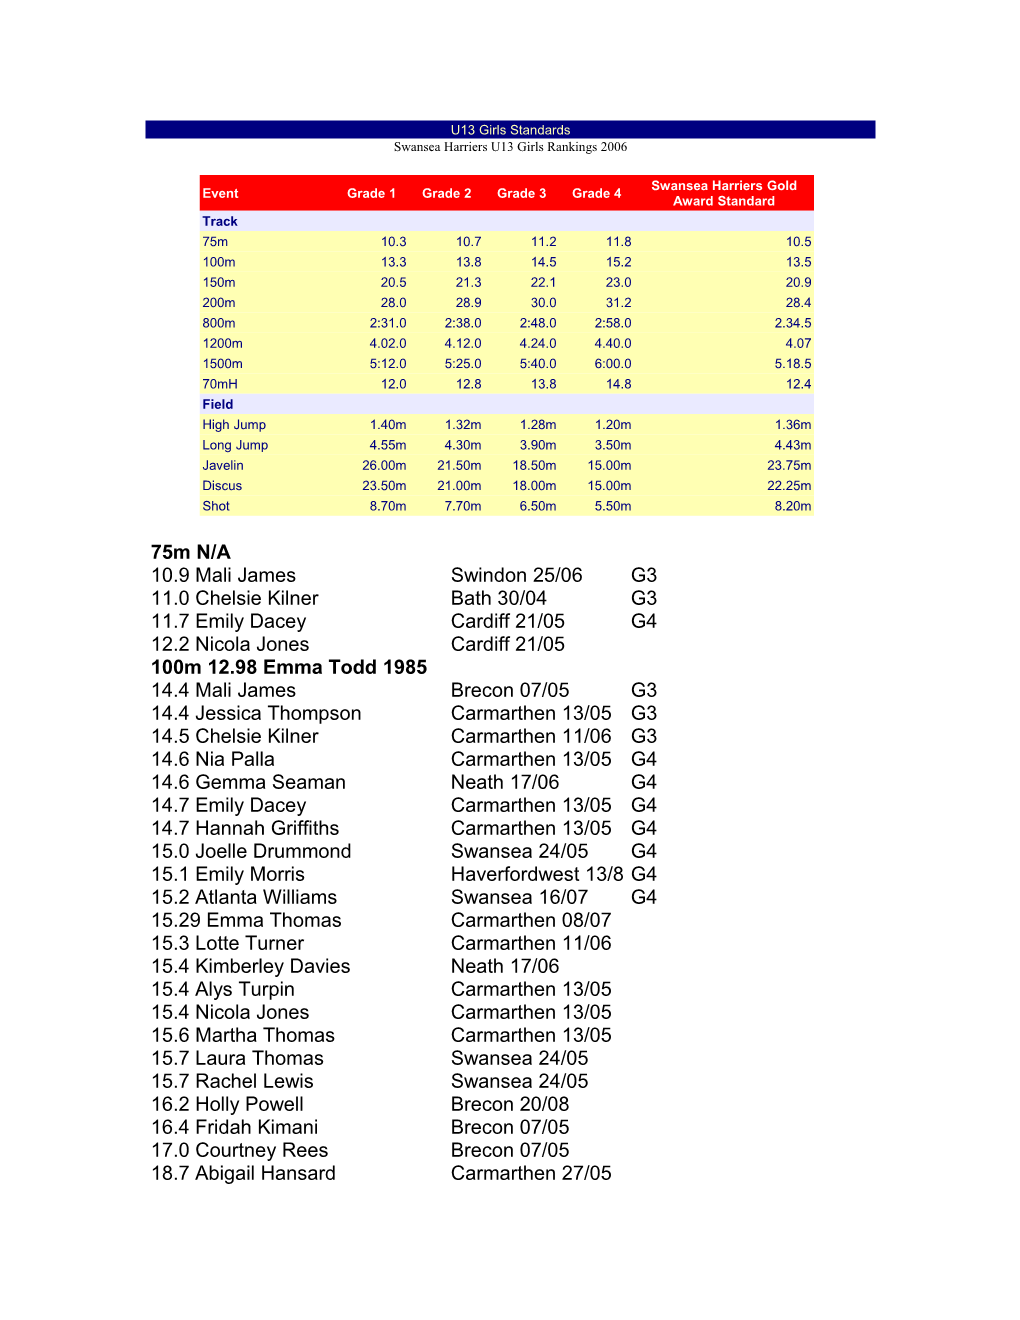 Swansea Harriers U13 Girls Rankings 2006